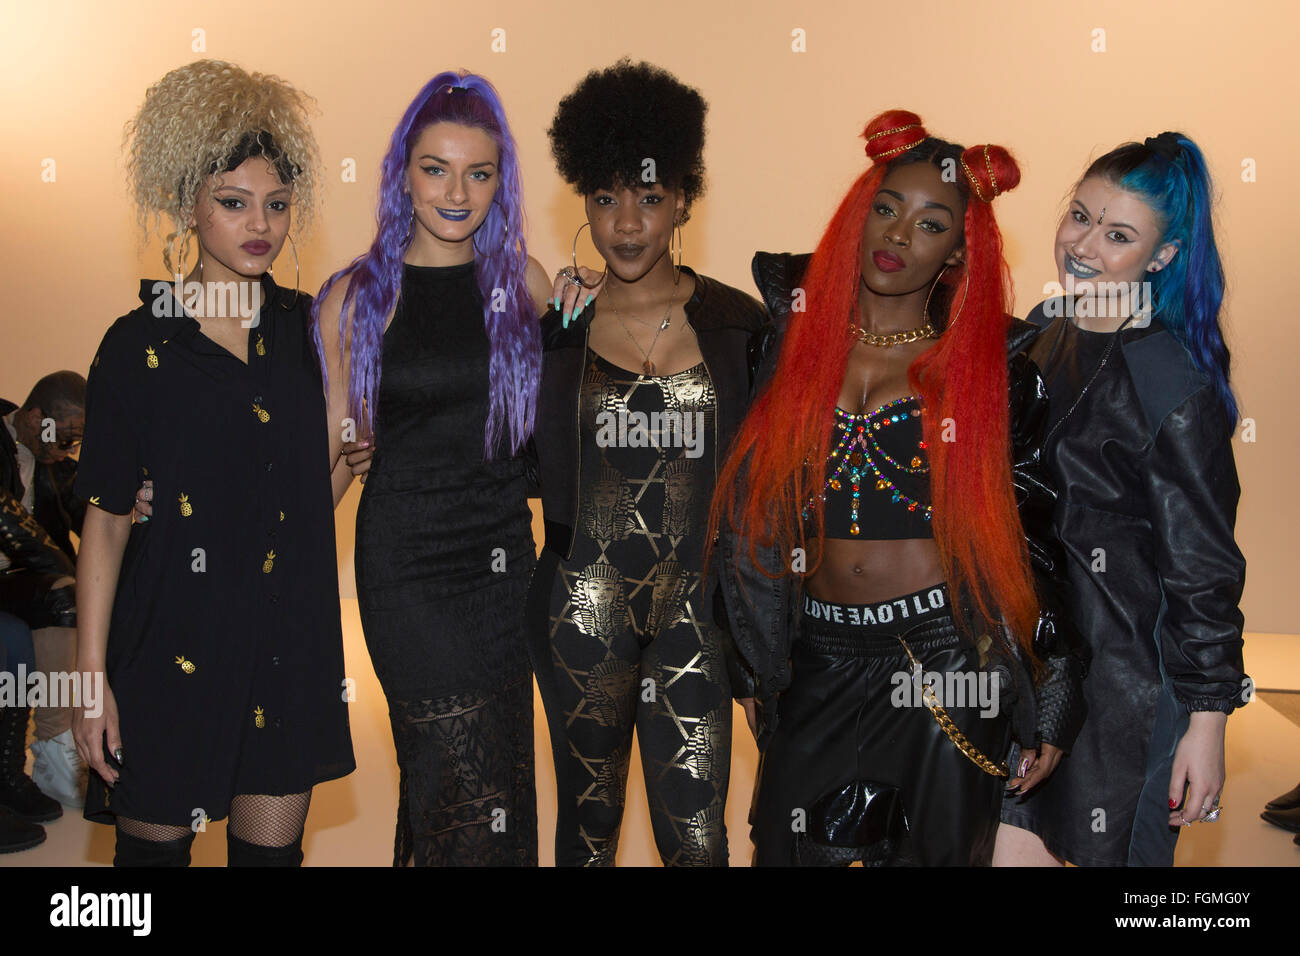 Londres, Royaume-Uni. 20 février 2016. Groupe de filles Alien découvert. Xia feuilles défilé à Freemasons' Hall/Fashion du Scoutisme lors de la London Fashion Week. Banque D'Images